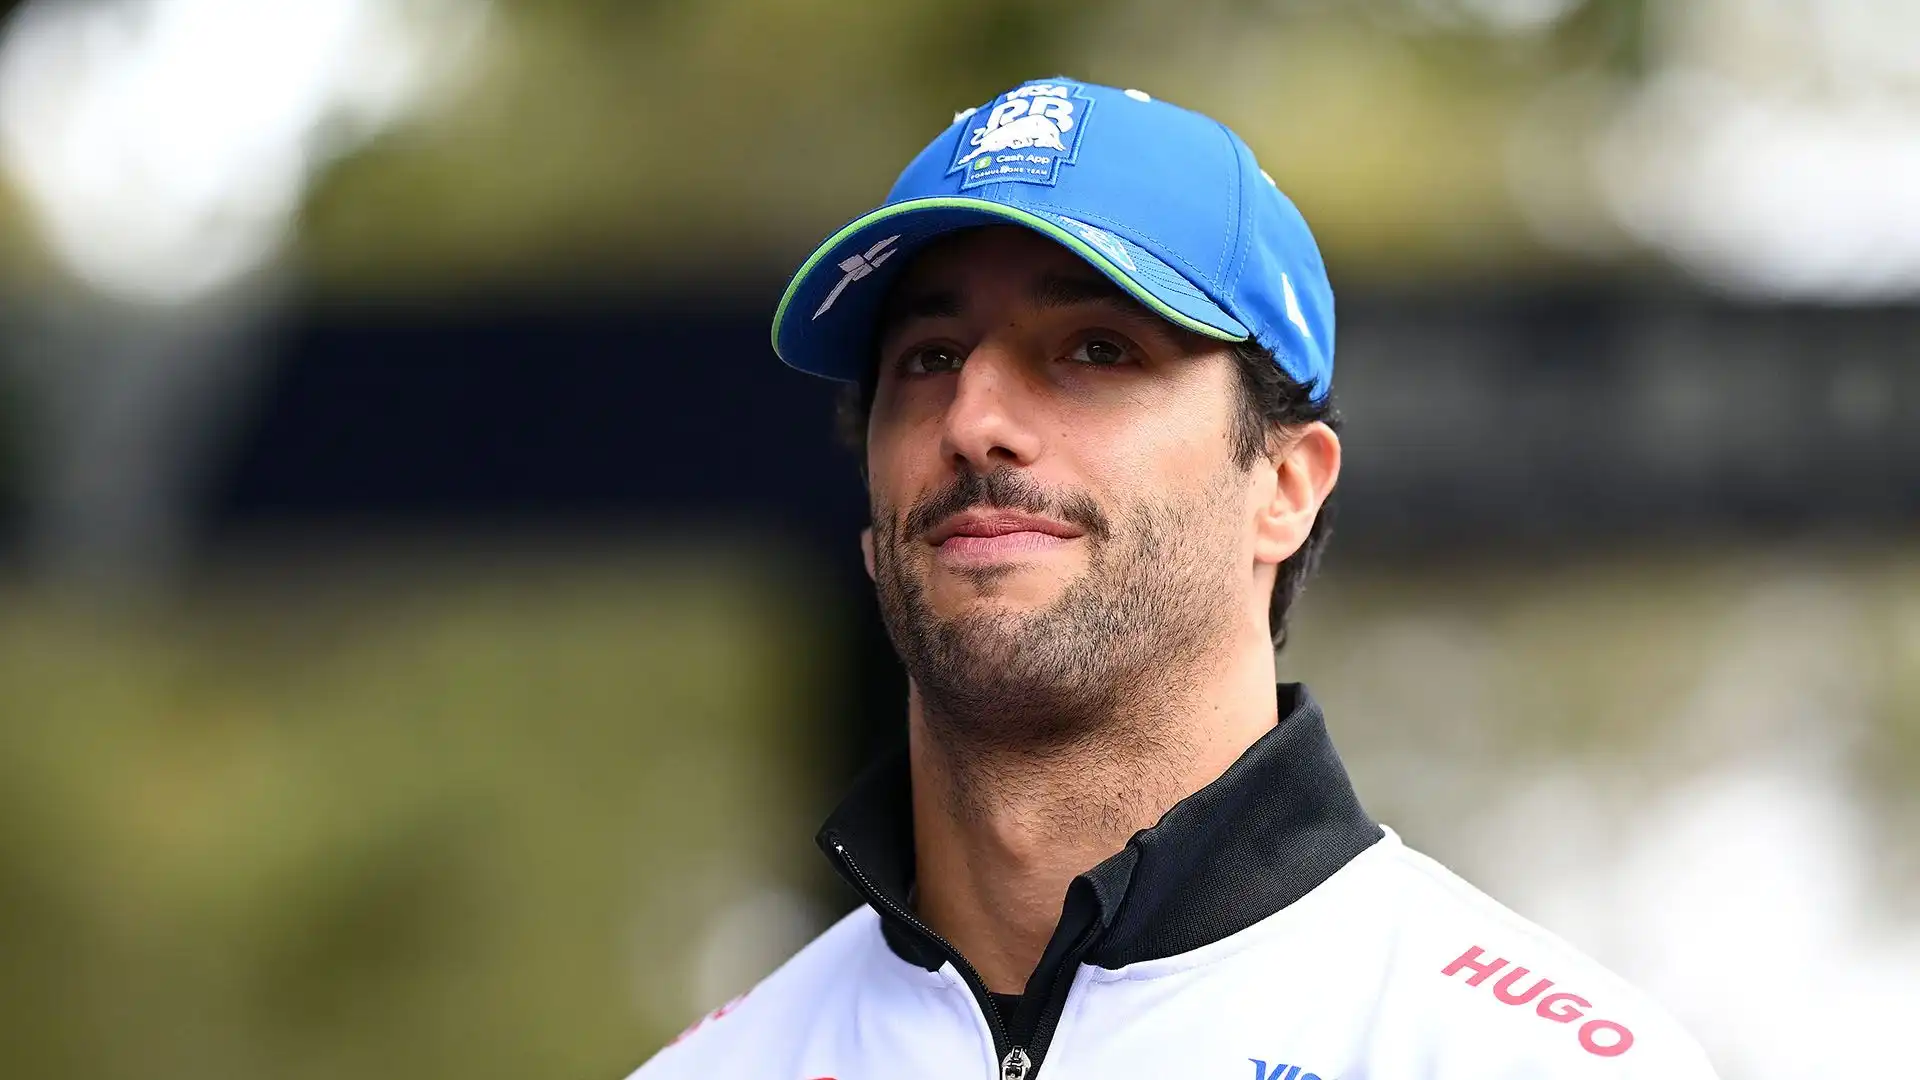 Secondo la stampa inglese, Marko avrebbe avvertito Ricciardo